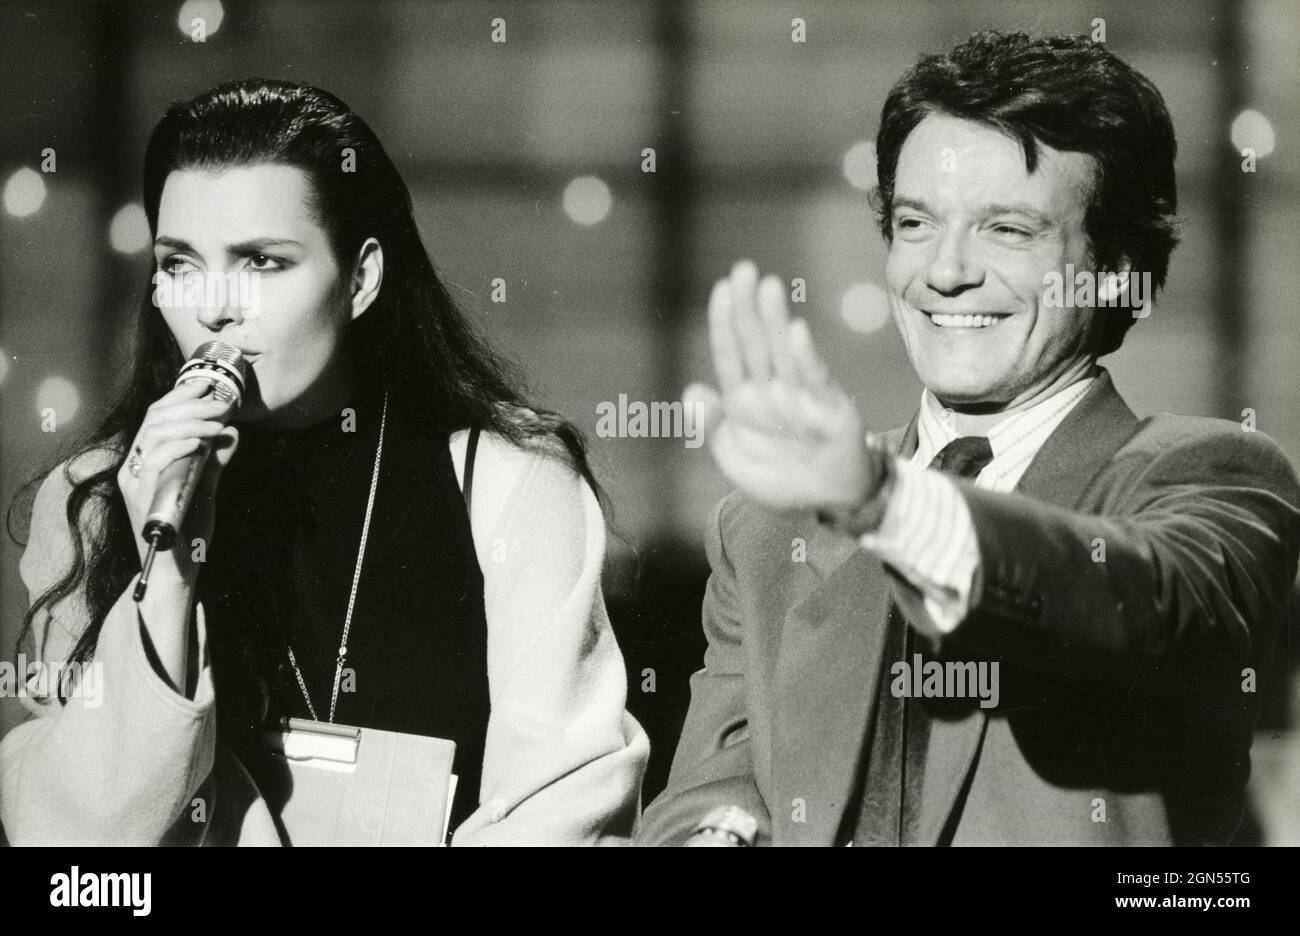 Italian singers Anna Oxa and Massimo Ranieri at the TV show Fantastico 1989 Stock Photo